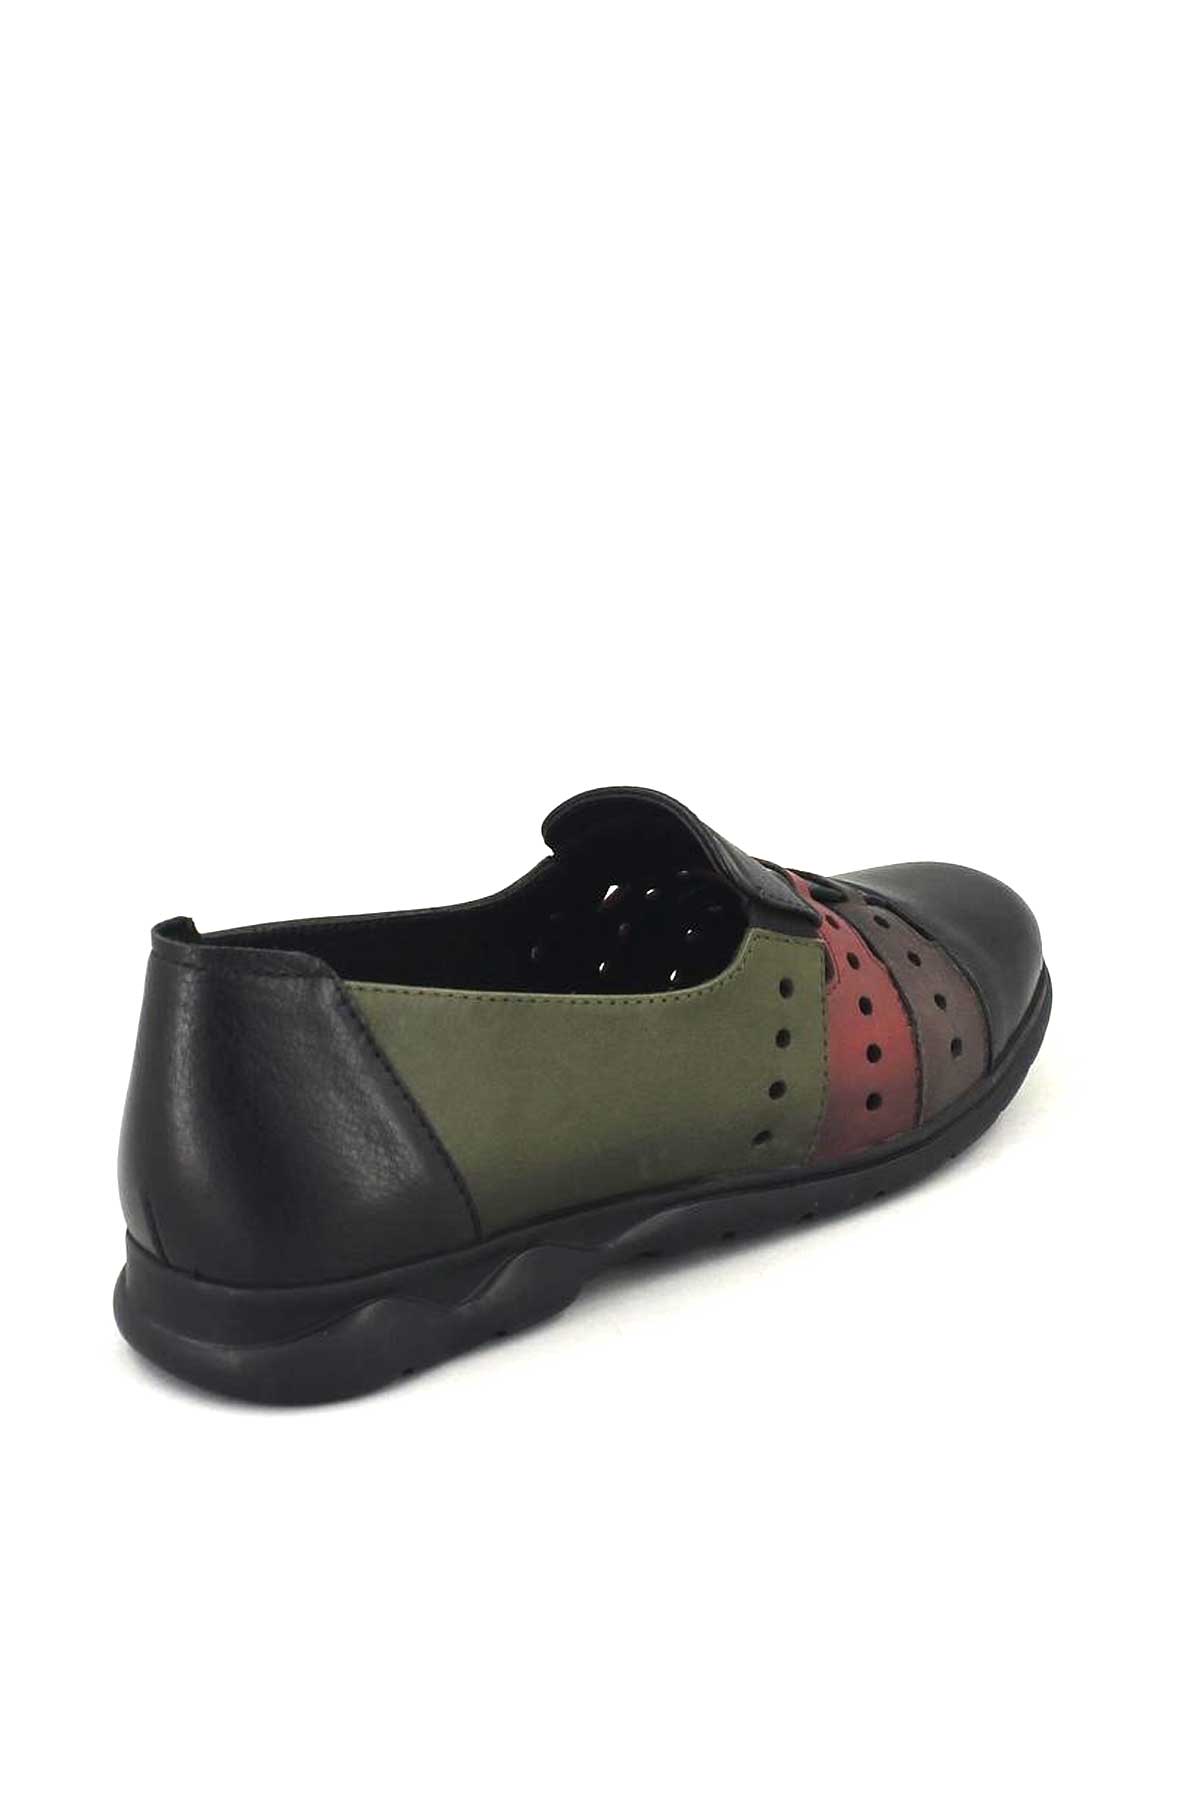 Kadın Yazlık Comfort Ayakkabı Siyah 1813672Y - Thumbnail